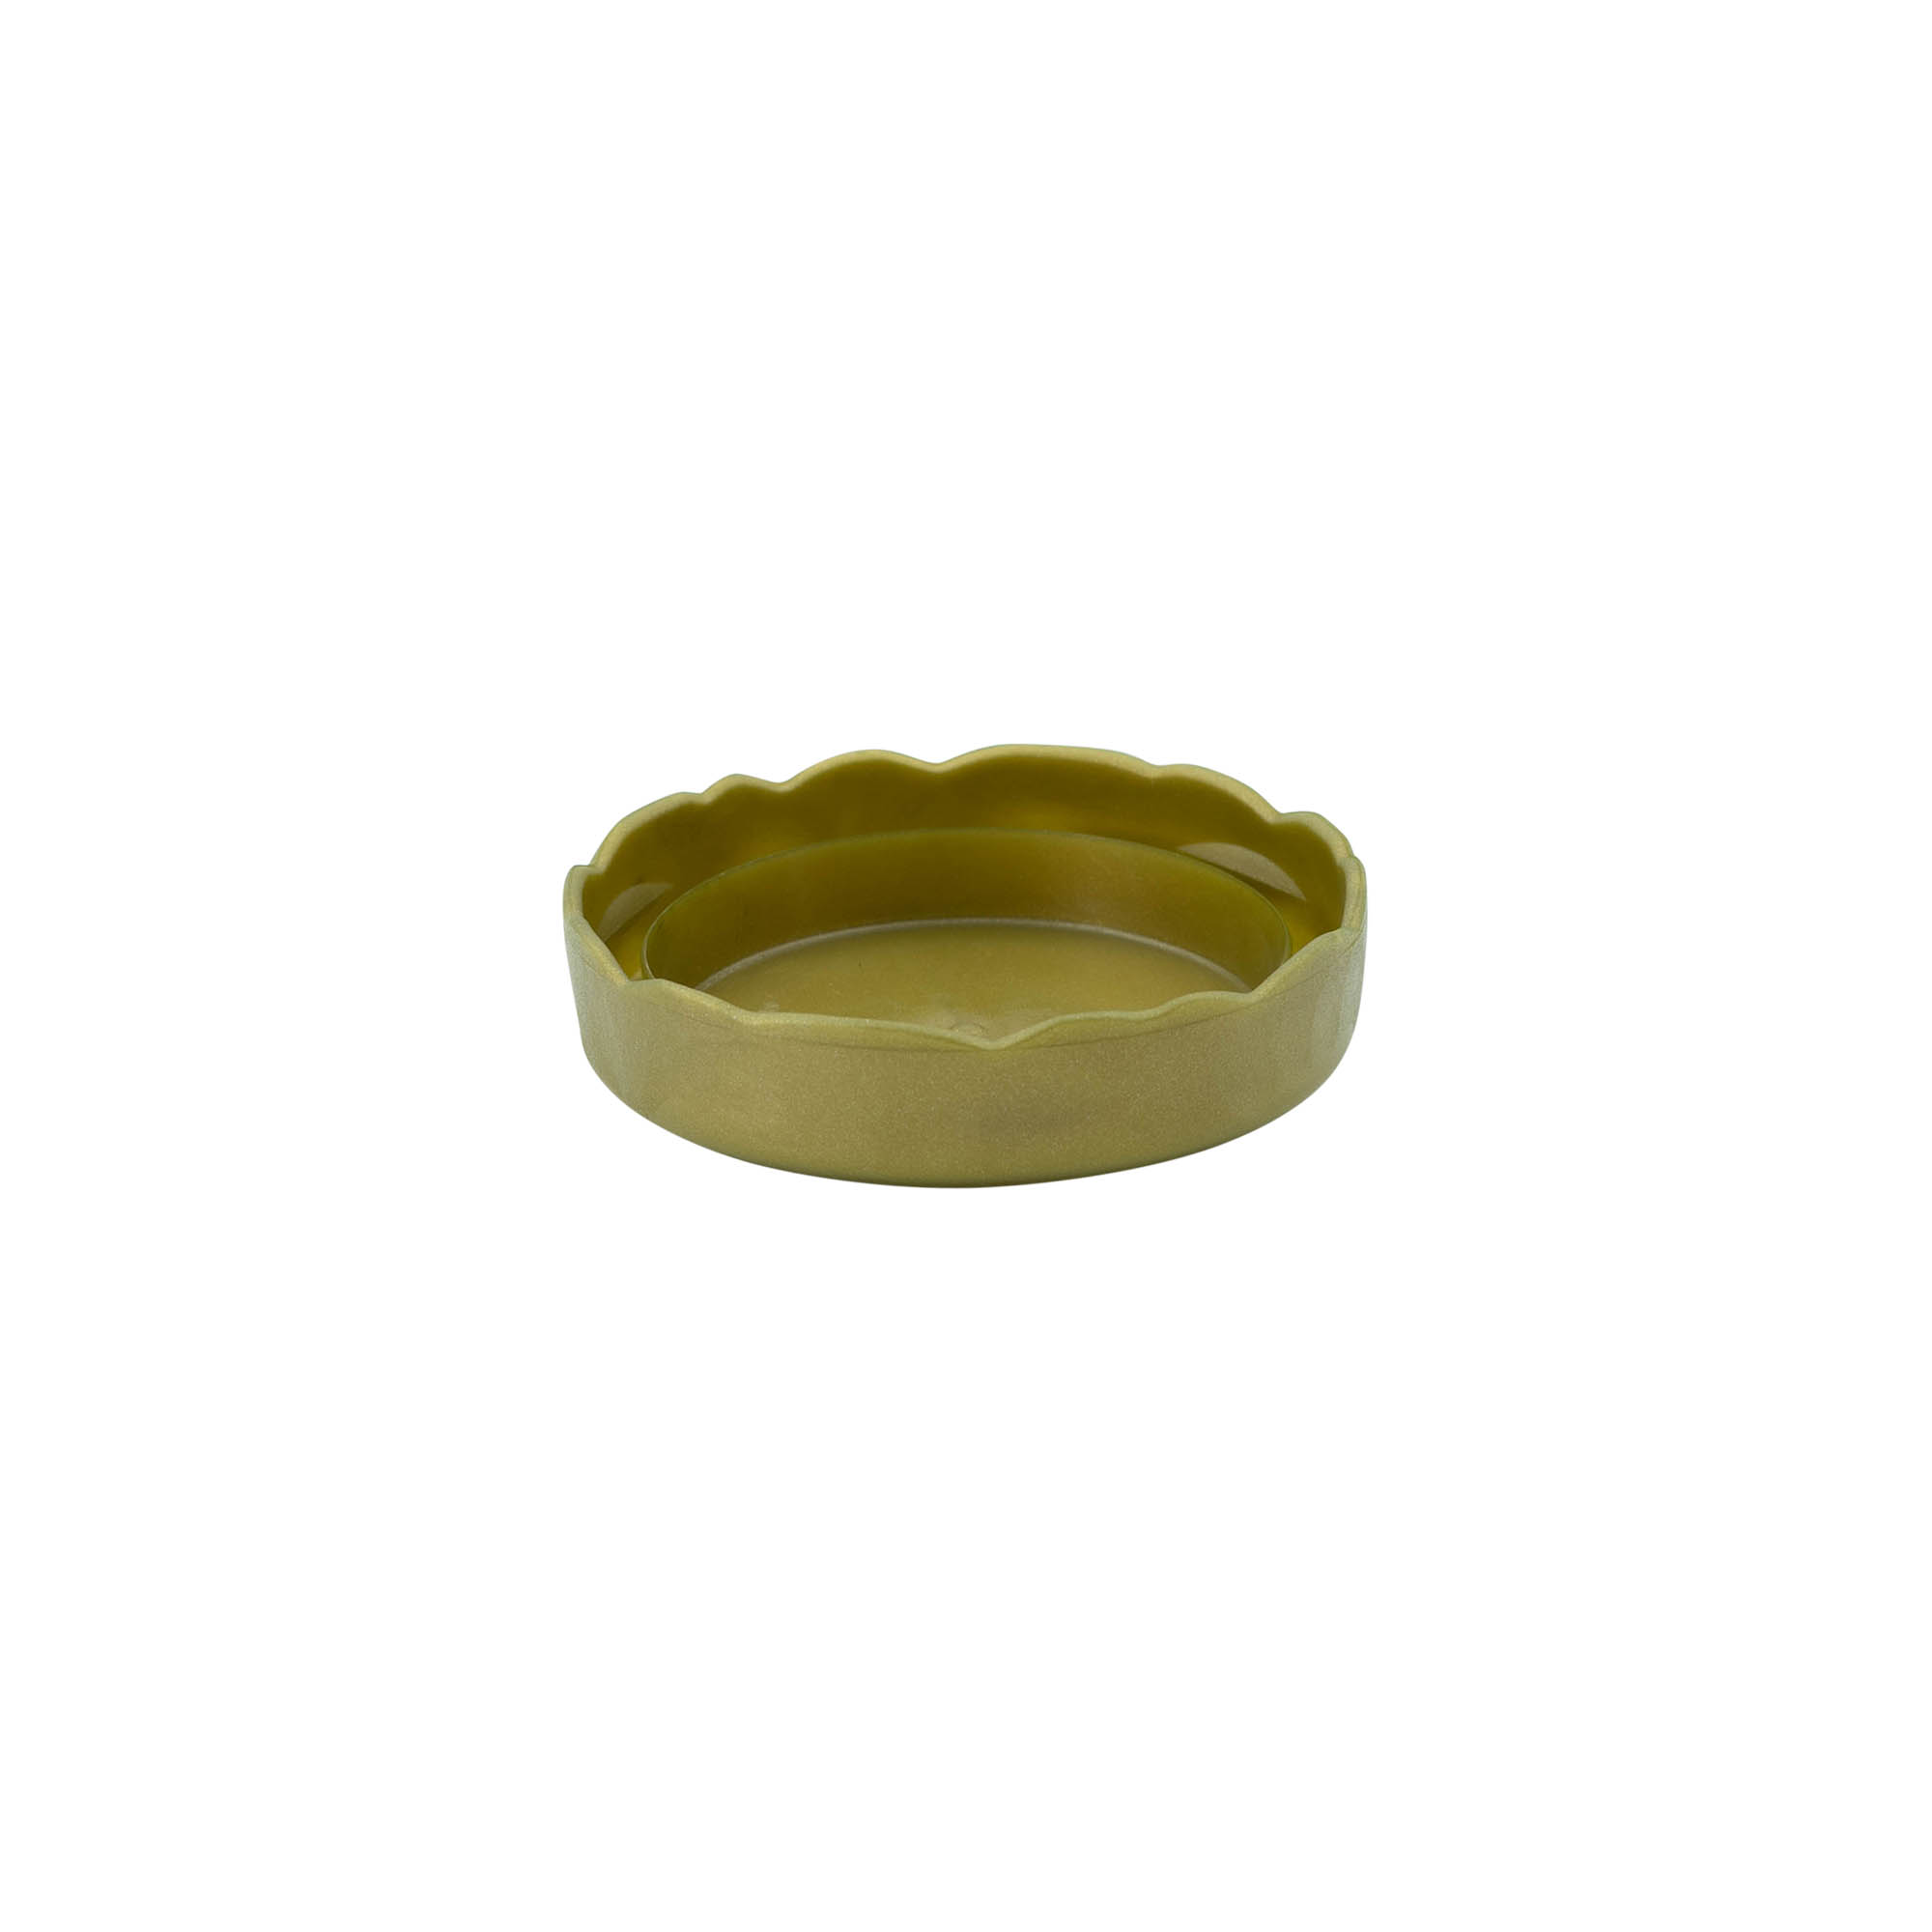 Hætte til smalhalset keramikkrukke, HDPE-plast, guld